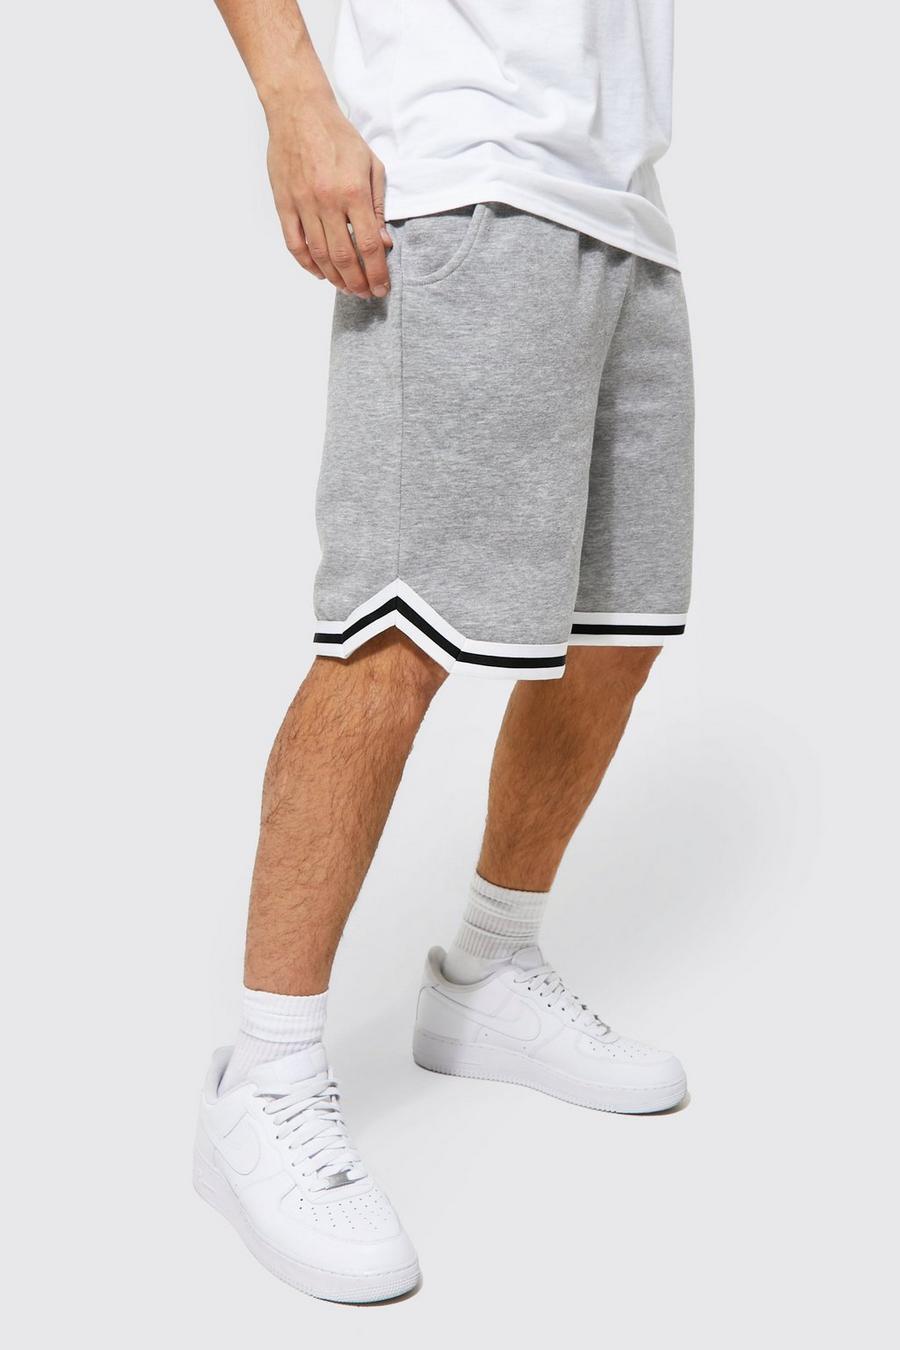 Pantalón corto estilo baloncesto con cinta y algodón ecológico, Grey gris